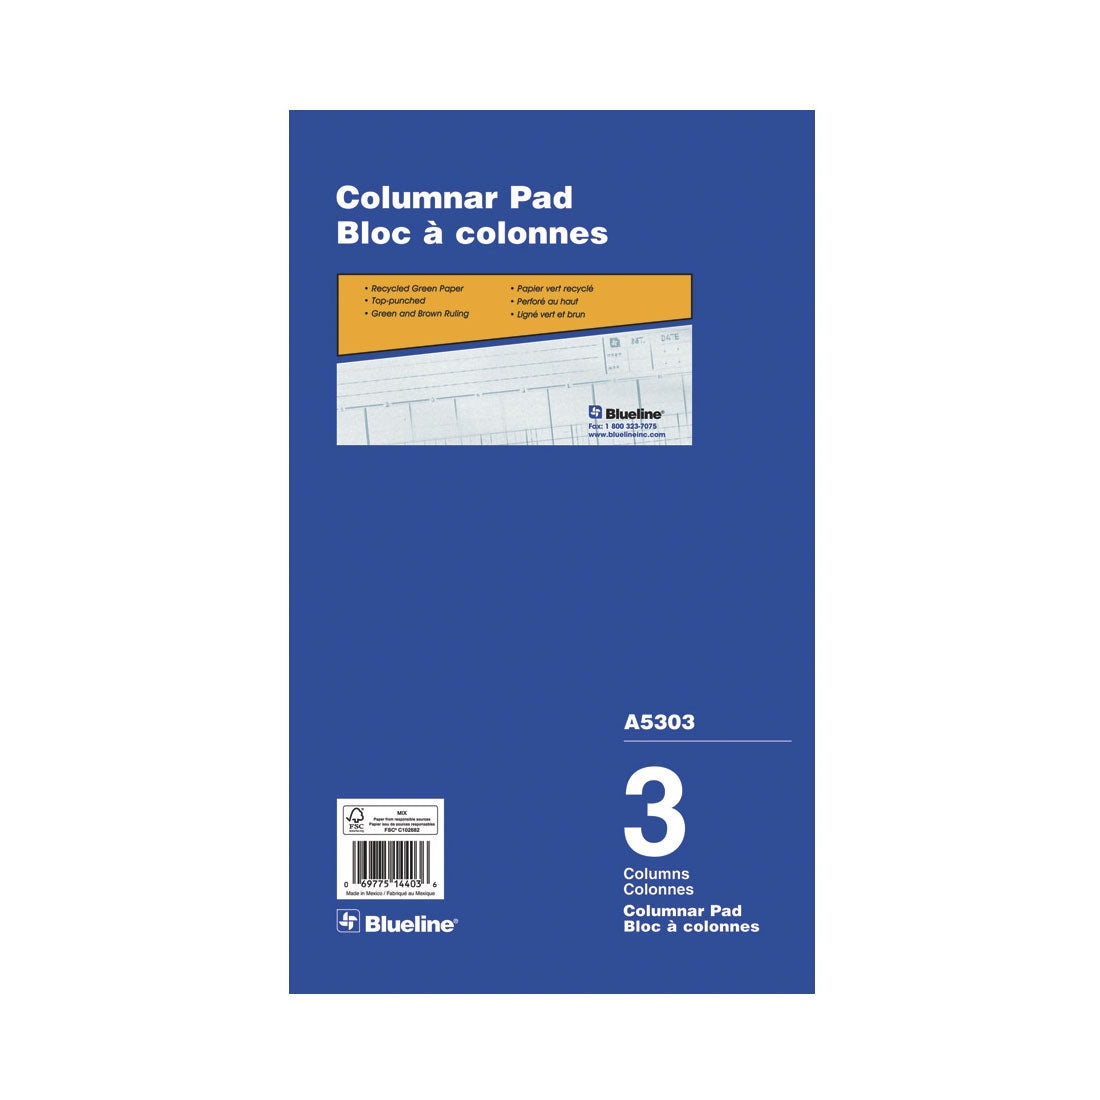 Columnar Pad - 3 Columns, A5303